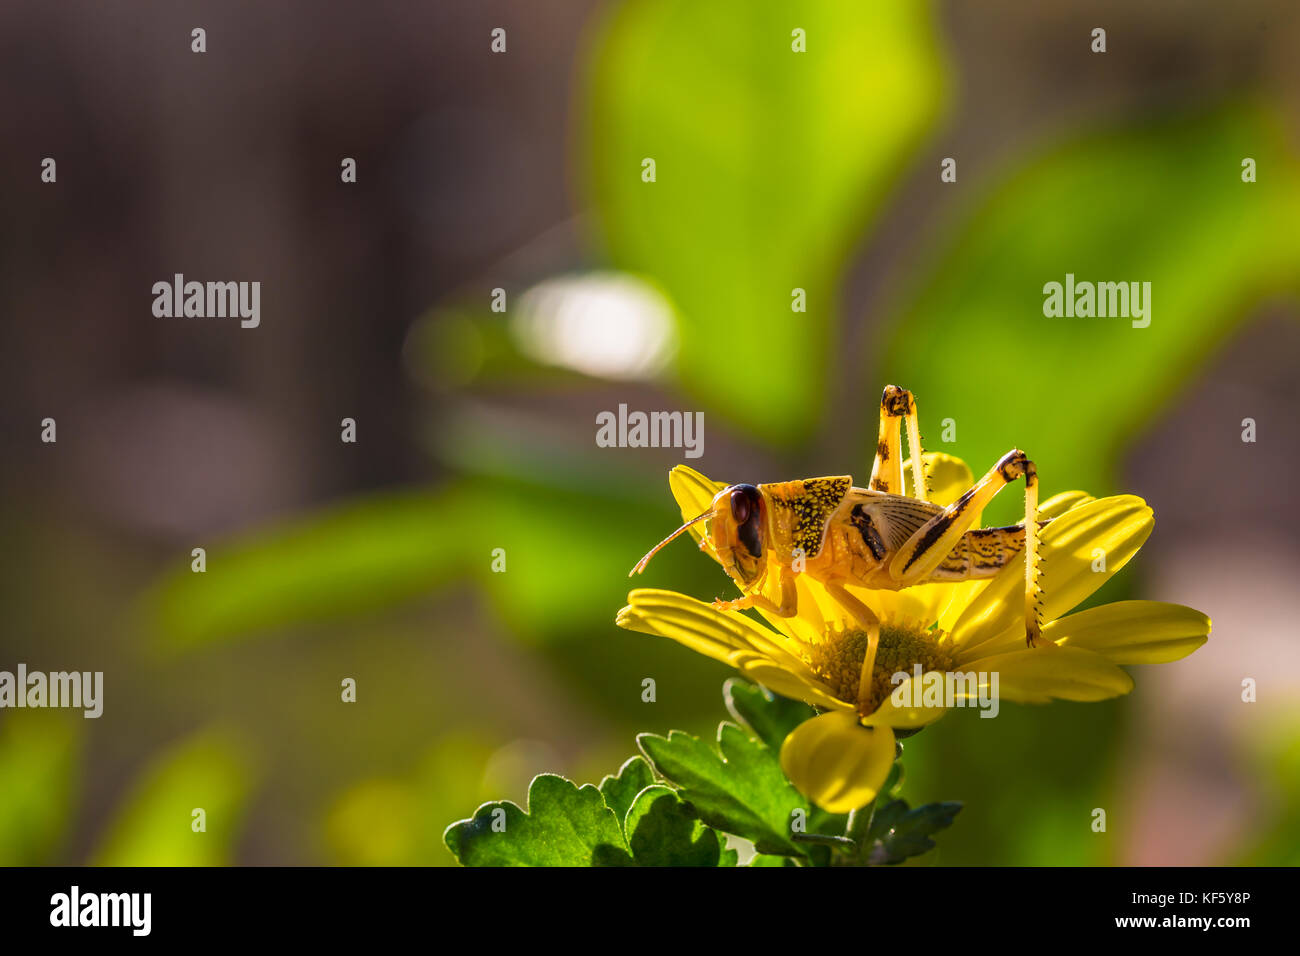 Grasshopper on flower Stock Photo